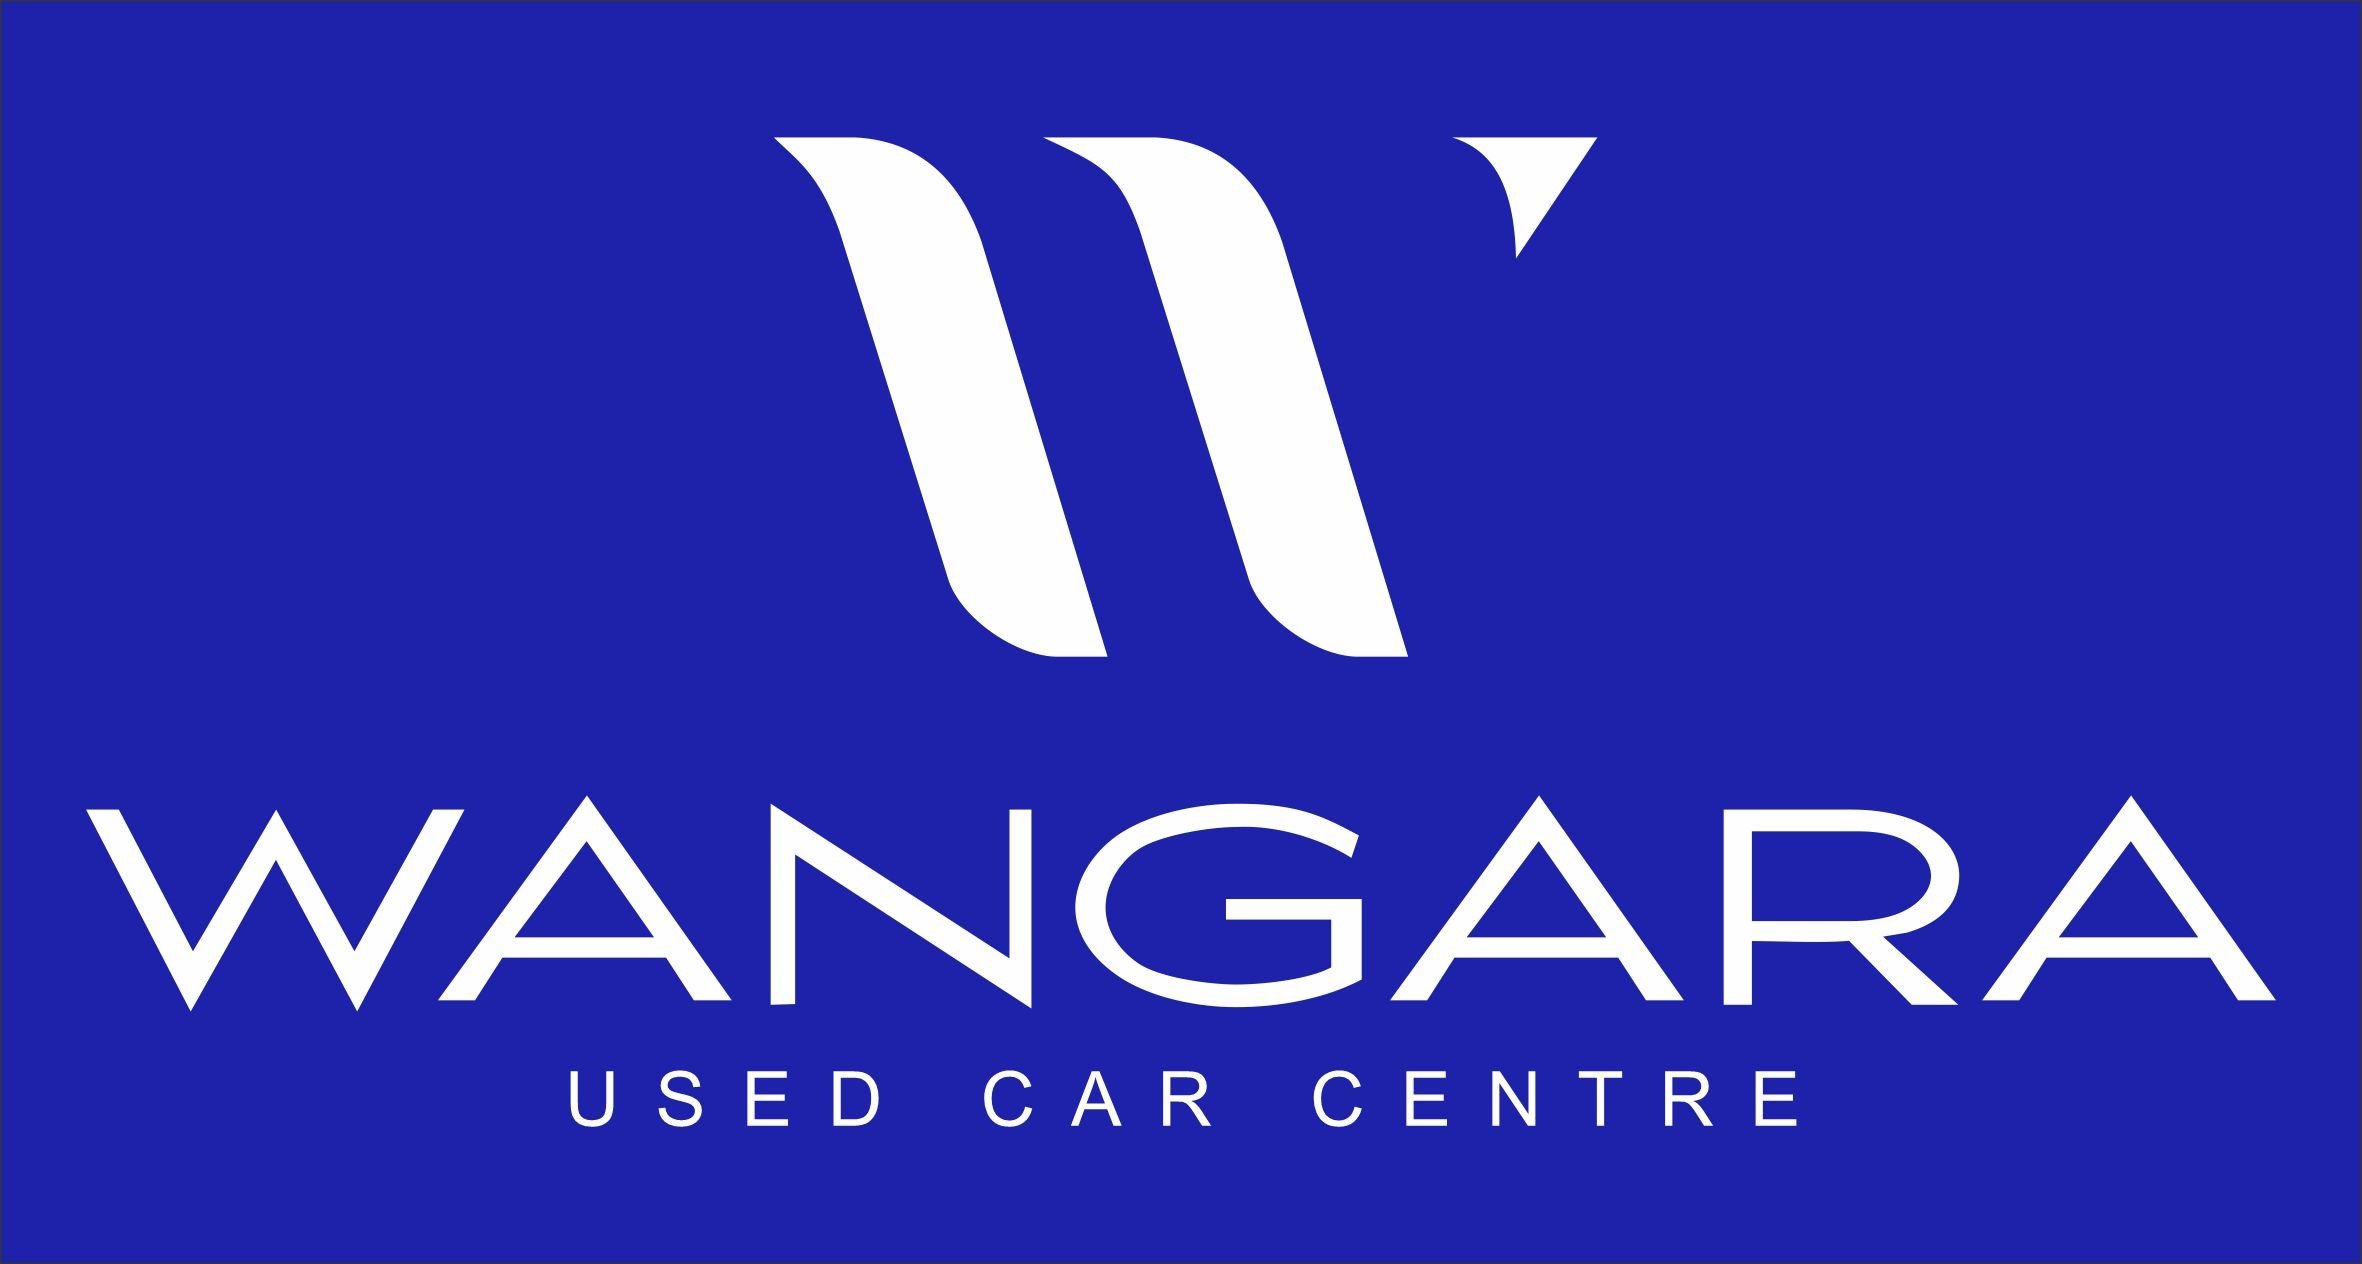 Wangara Used Car.jpg